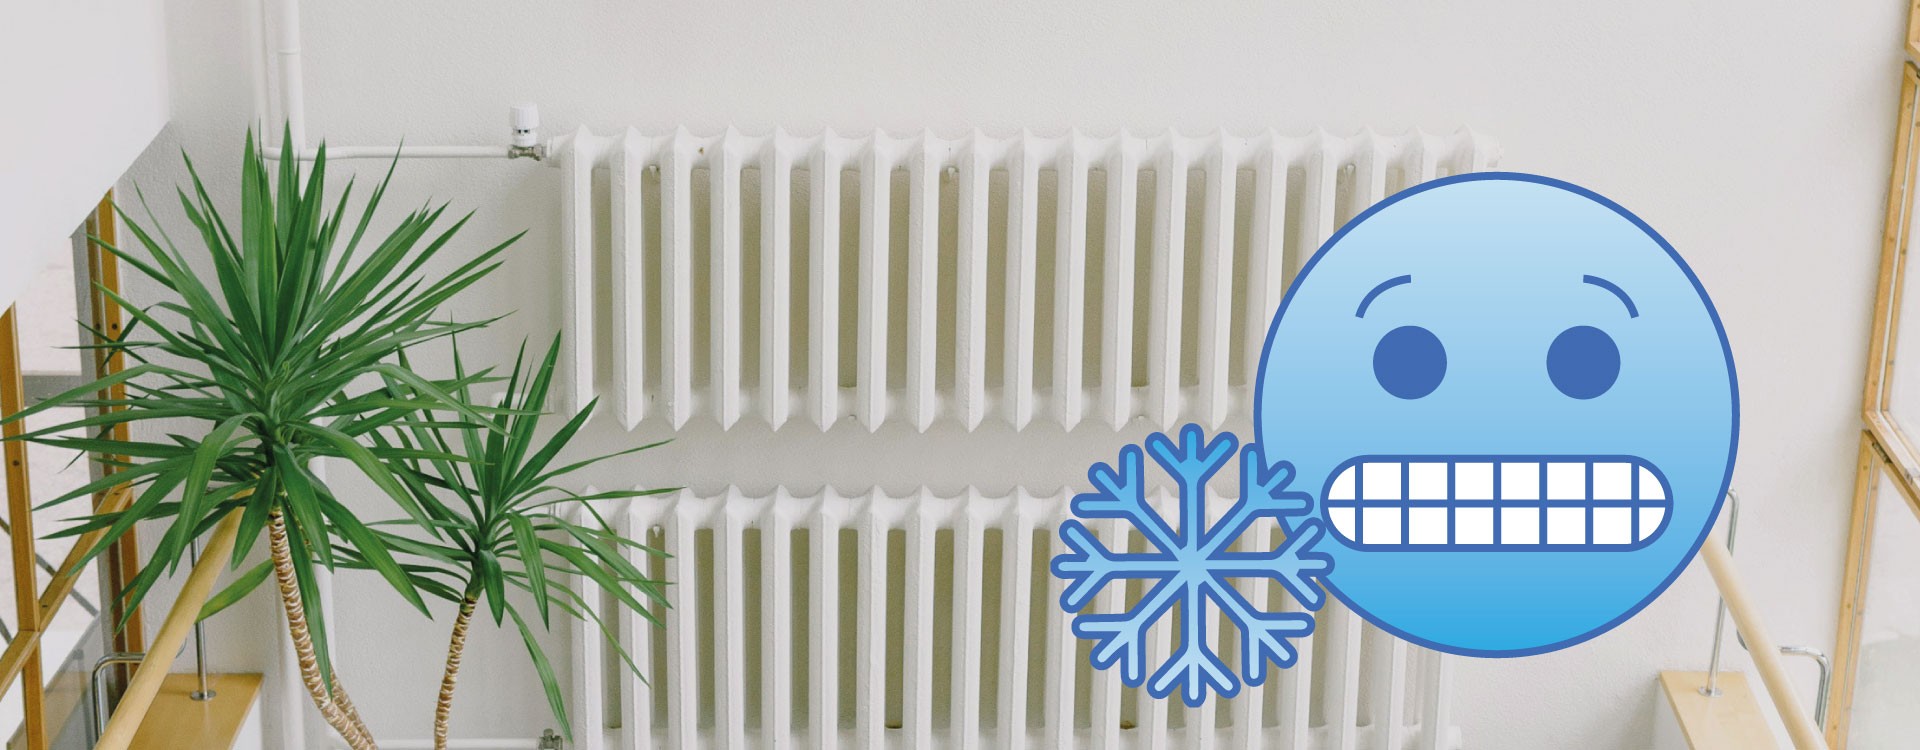 Perché i termosifoni restano freddi in basso?